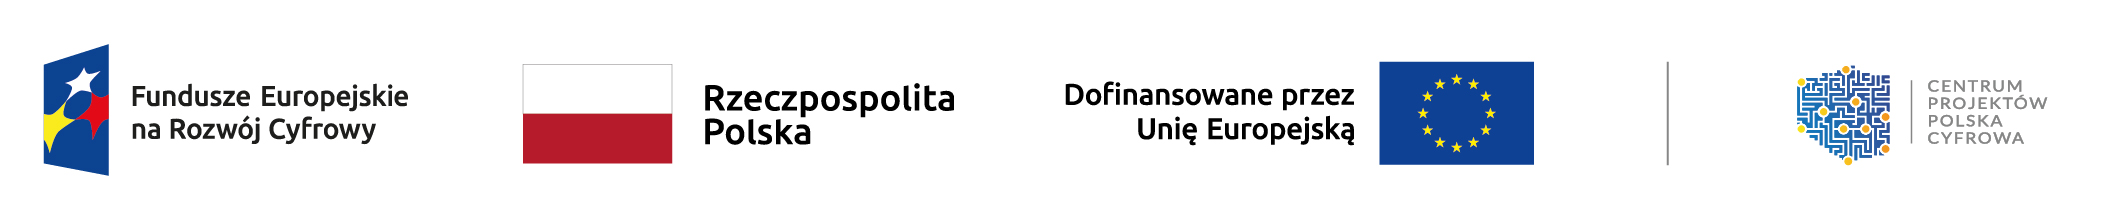 Logotypy programów unijnych